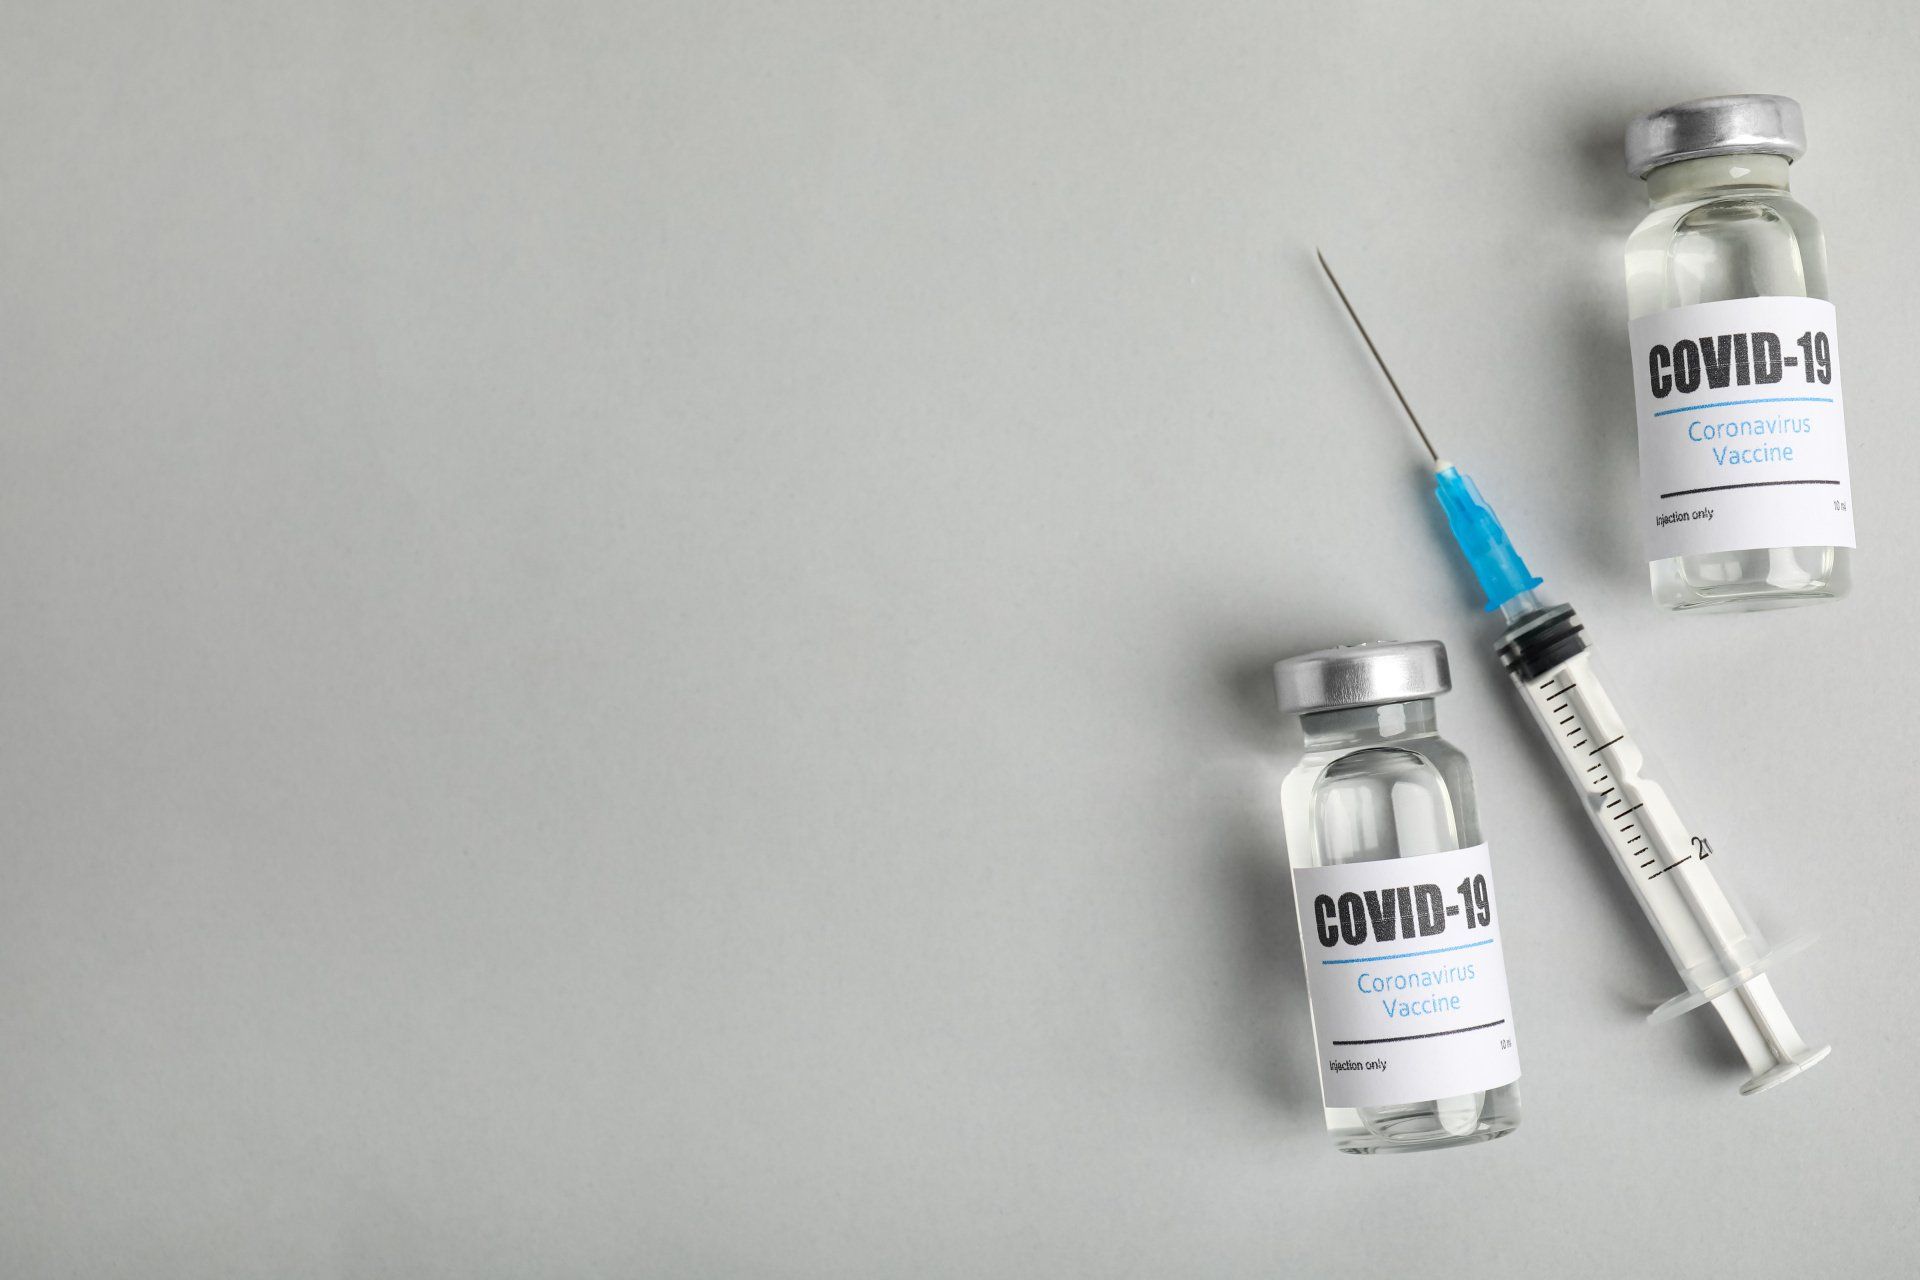 ¿Se puede presentar una reclamación por una orden del empleador de vacunarse contra COVID-19?